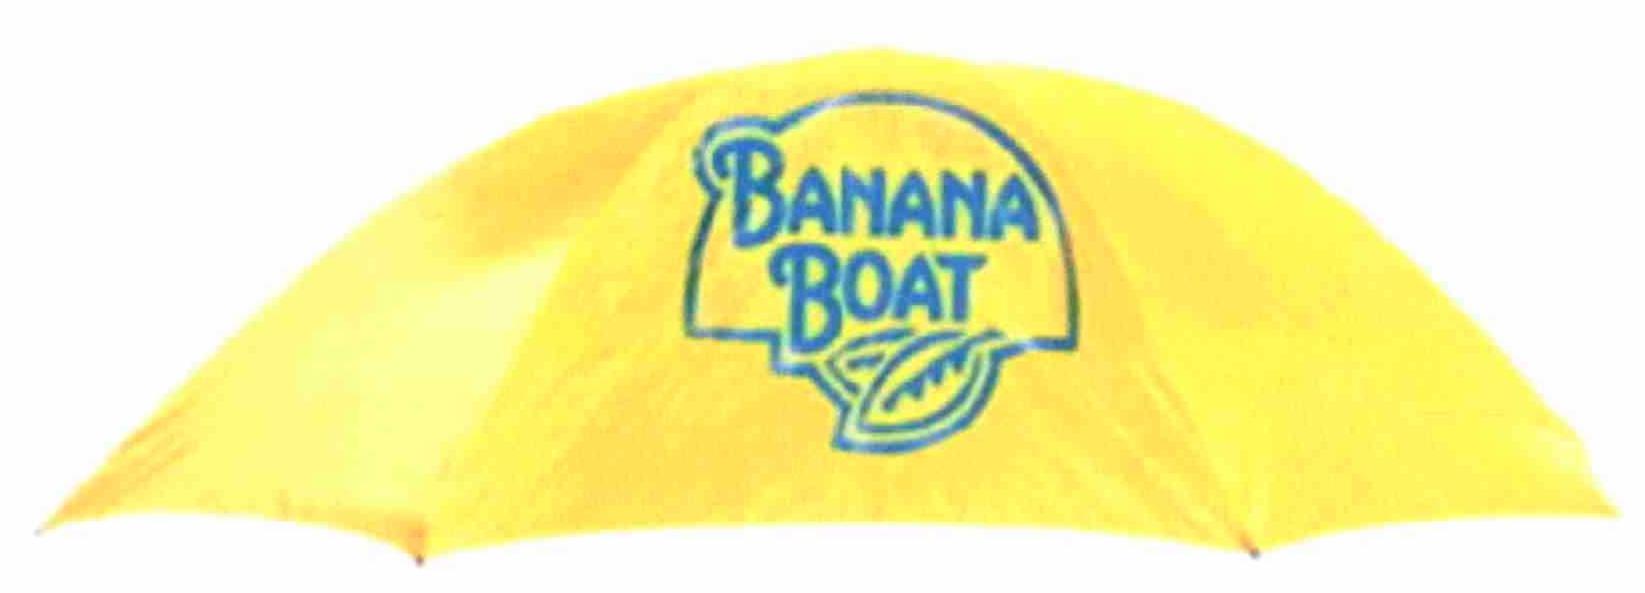 Trademark Logo BANANA BOAT